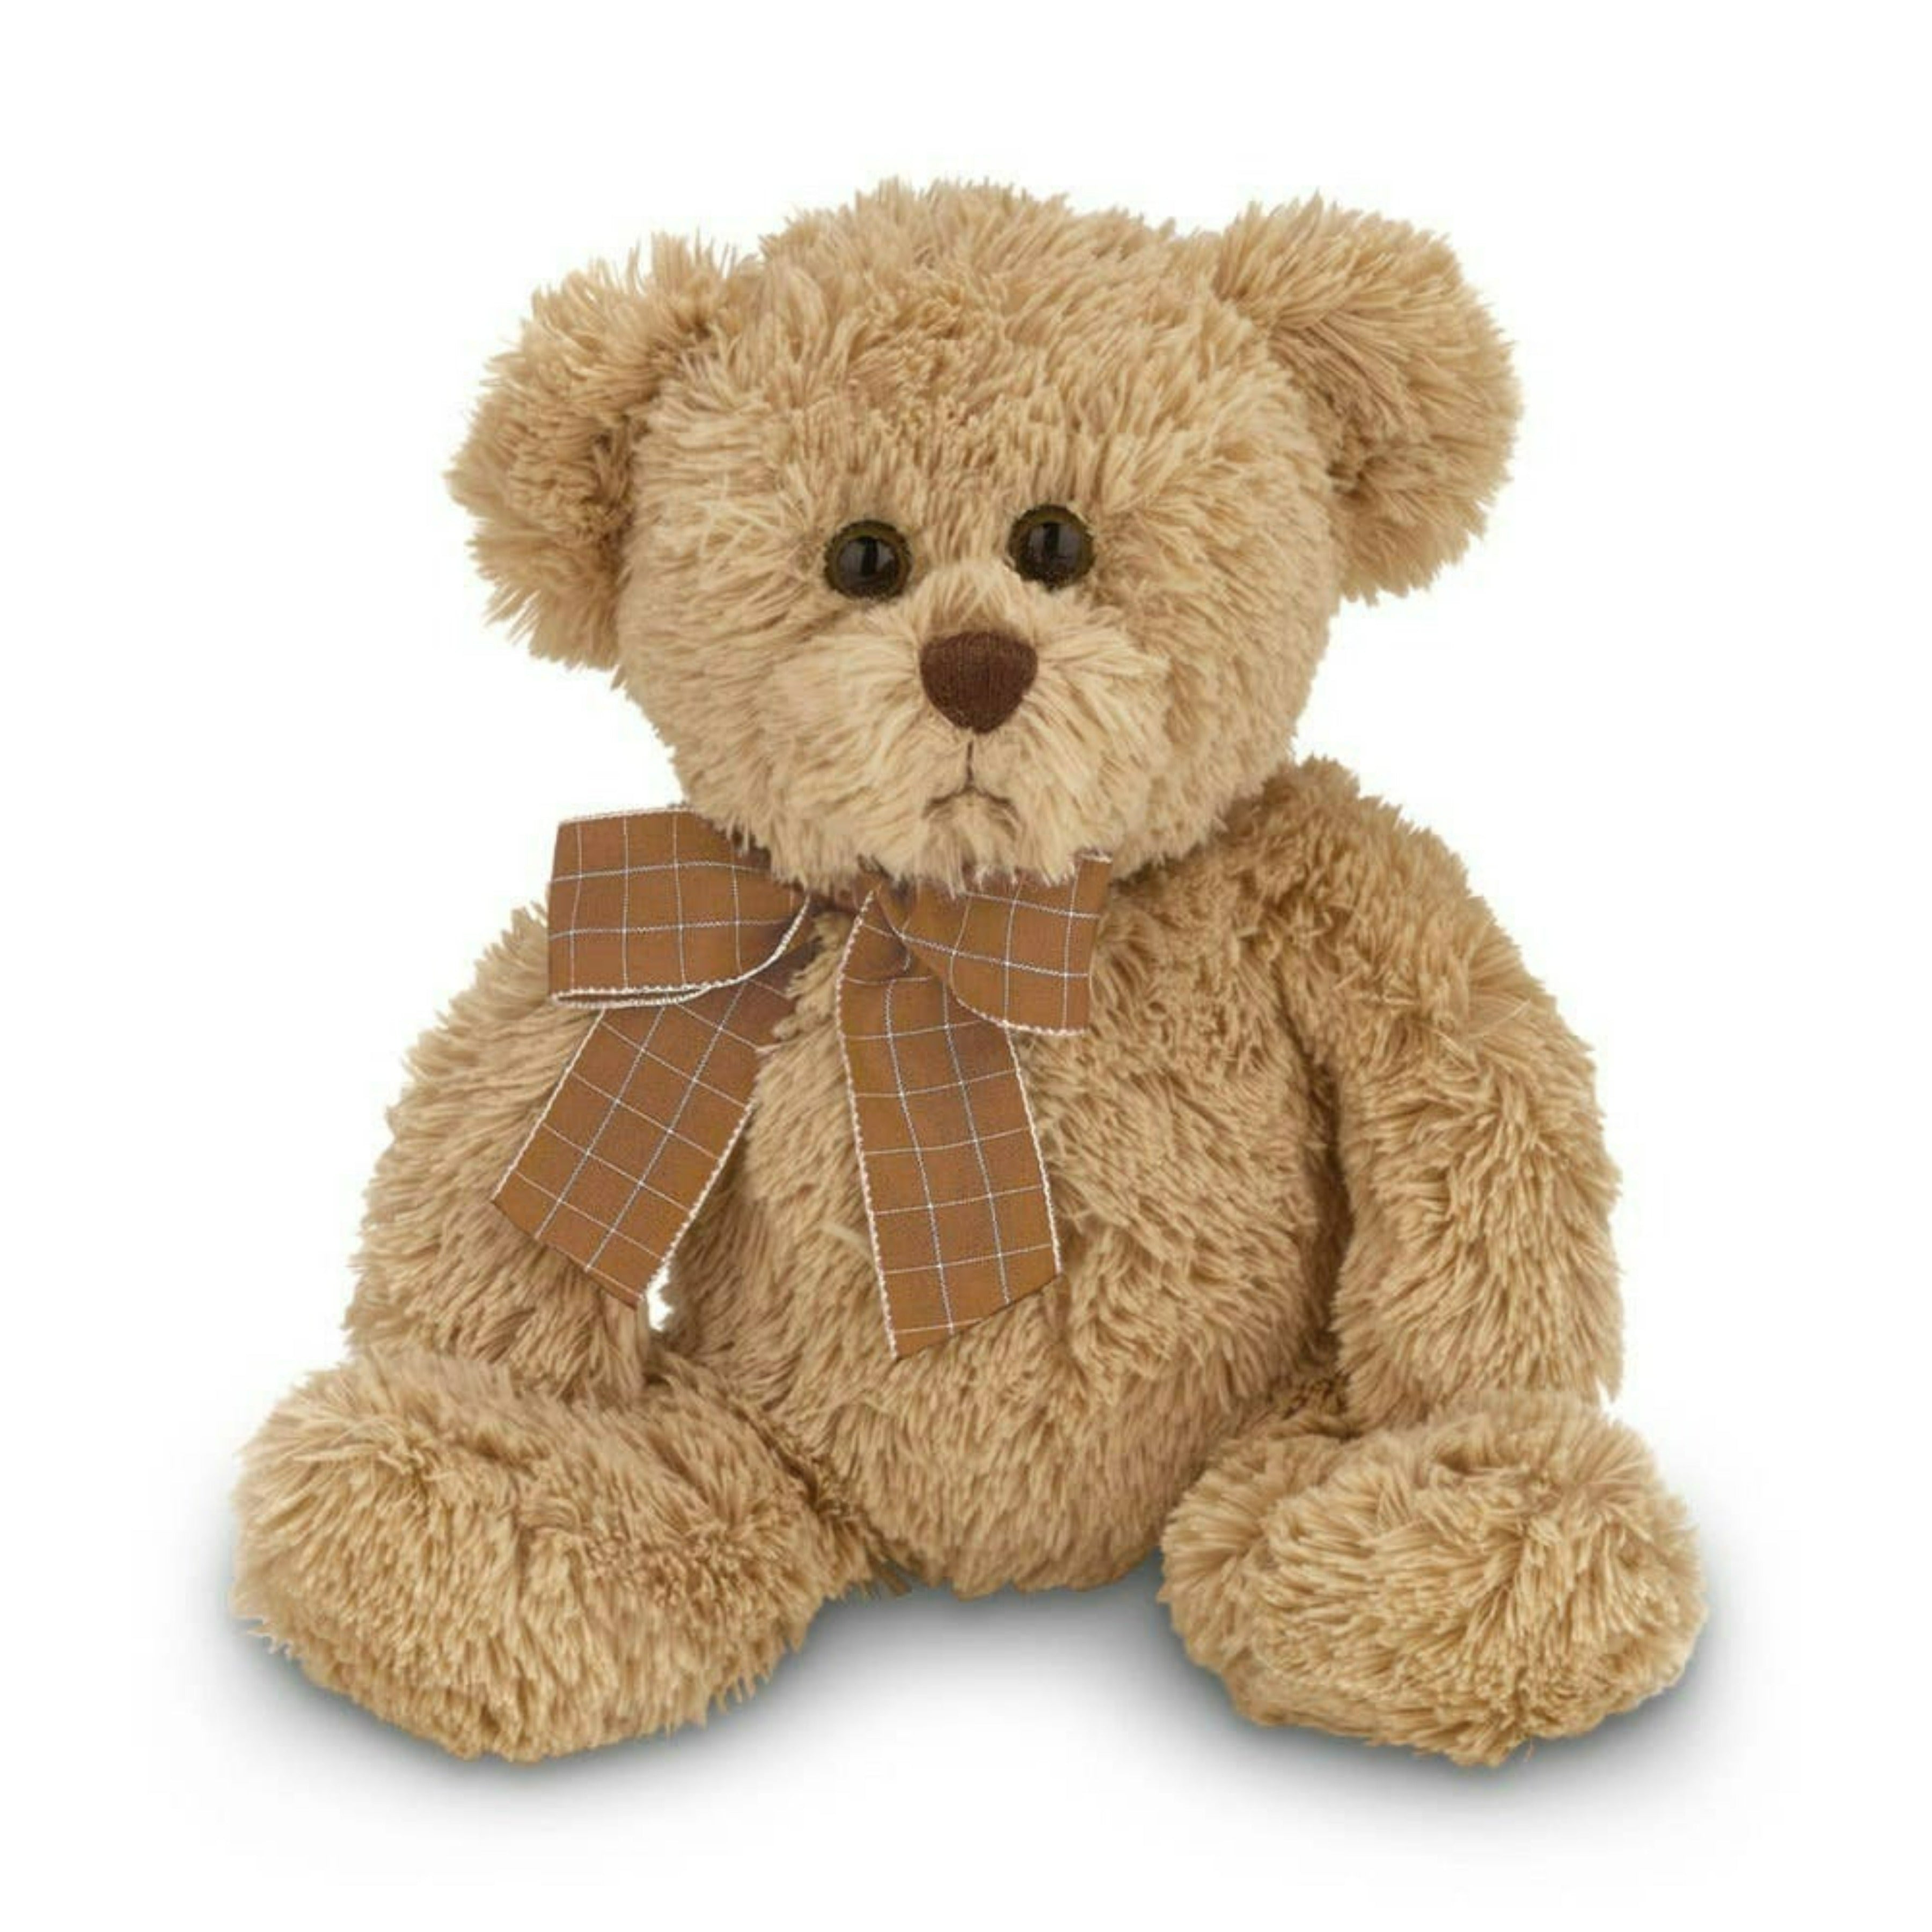 Baby Bensen the Teddy Bear